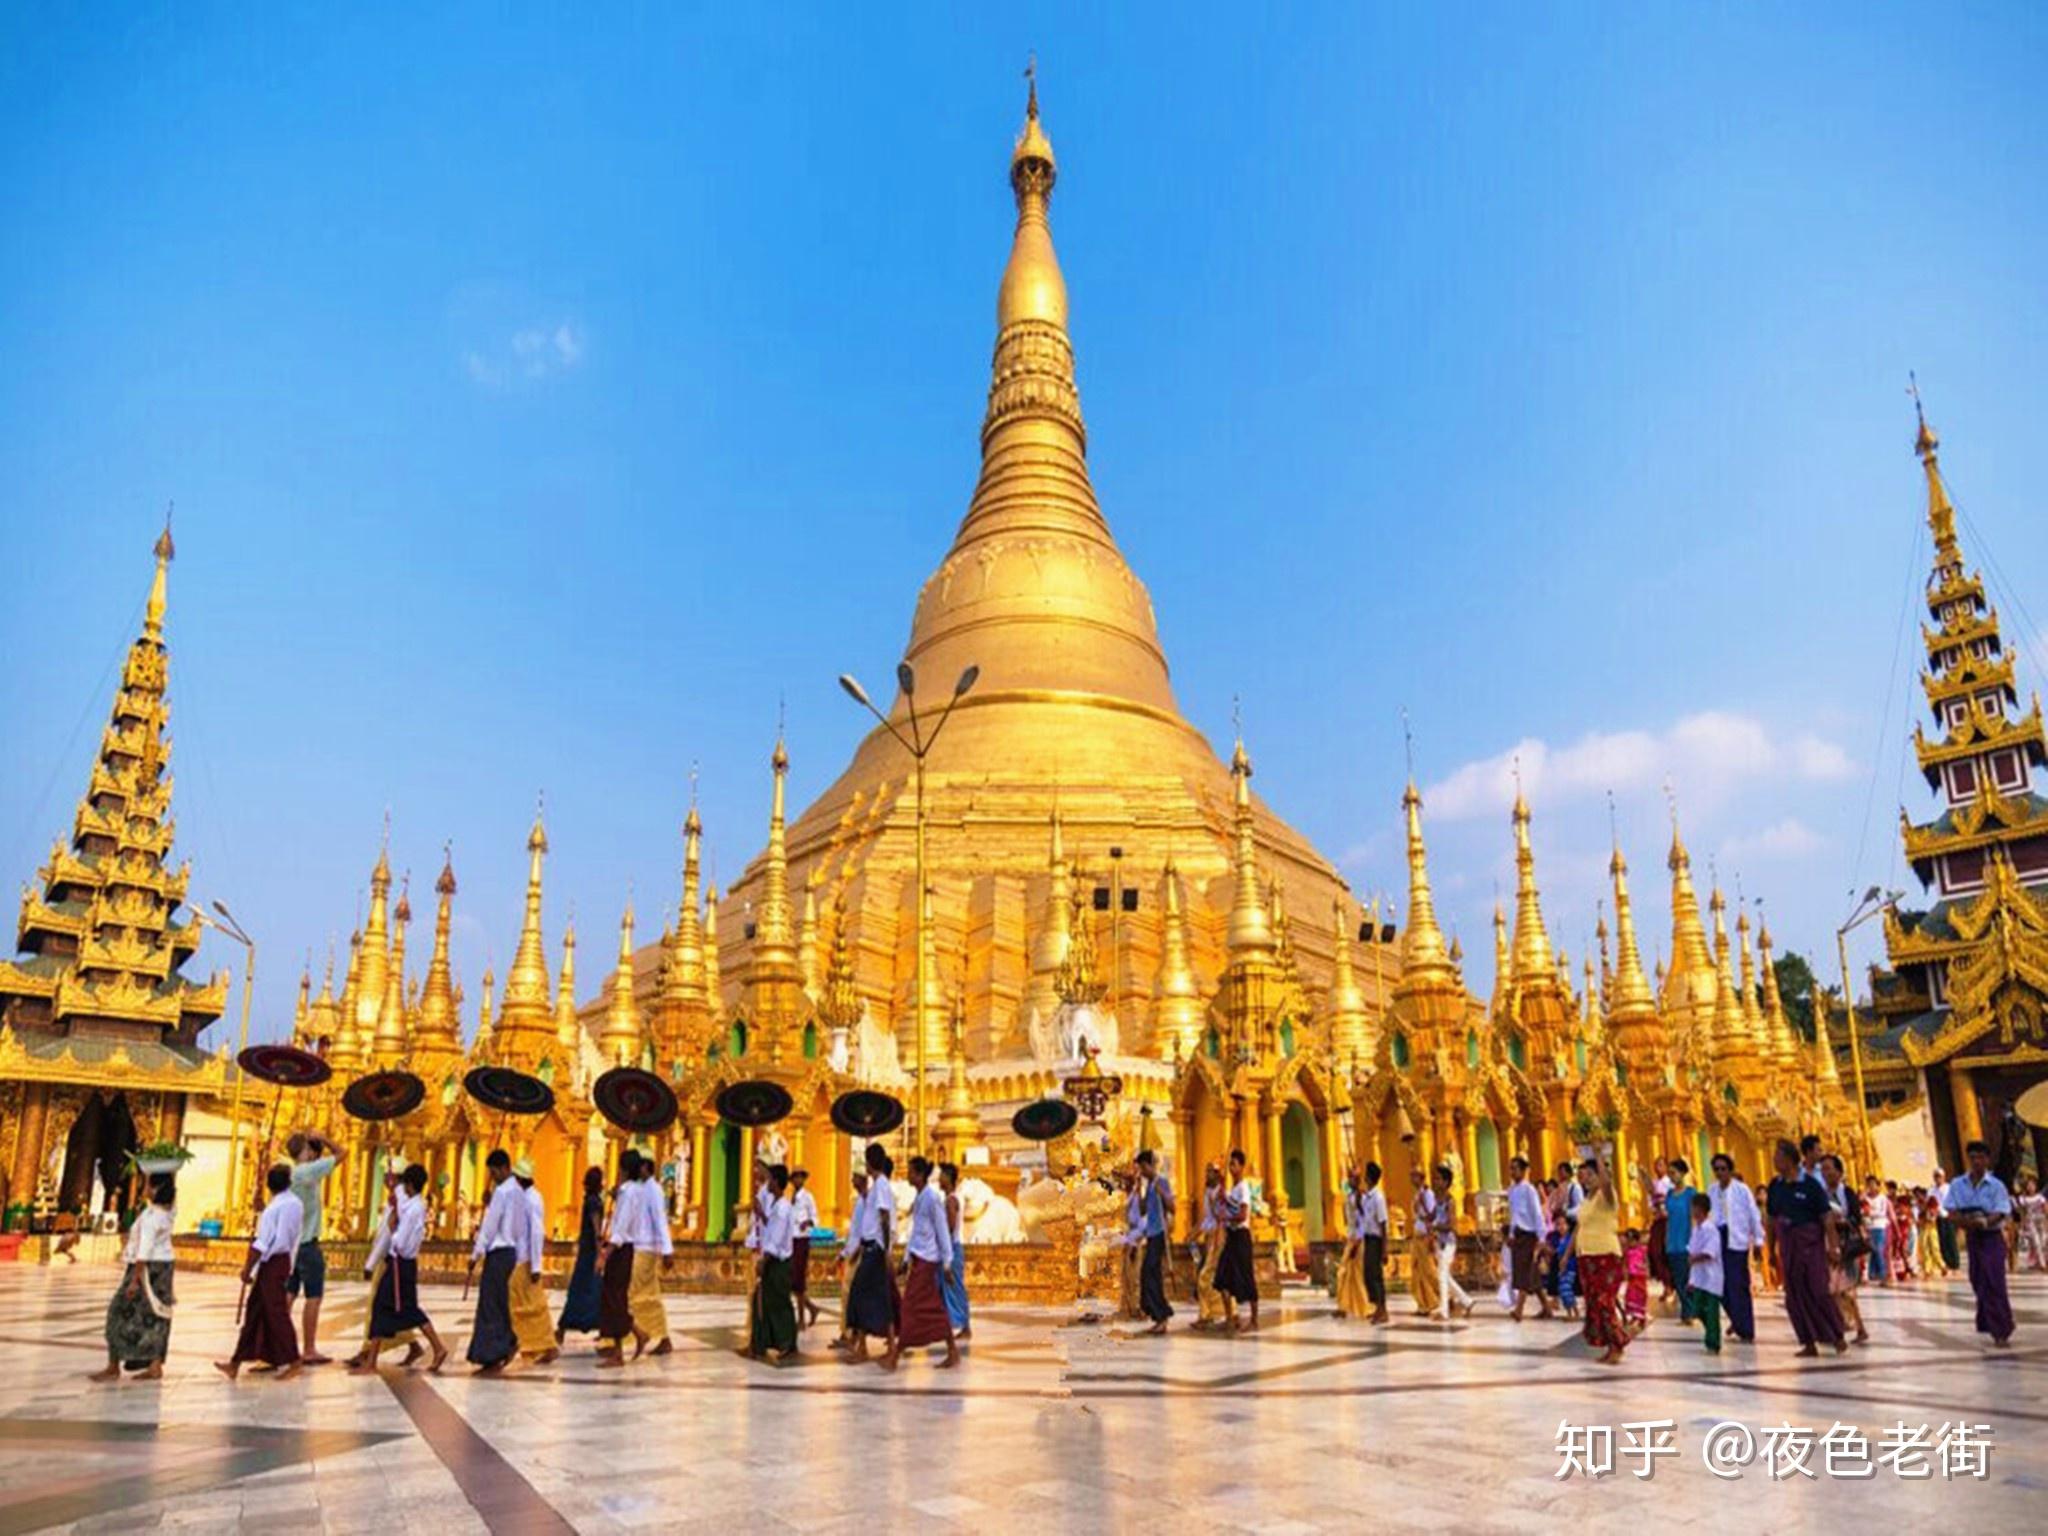 缅甸为什么要换首都？| 地球知识局 - 知乎